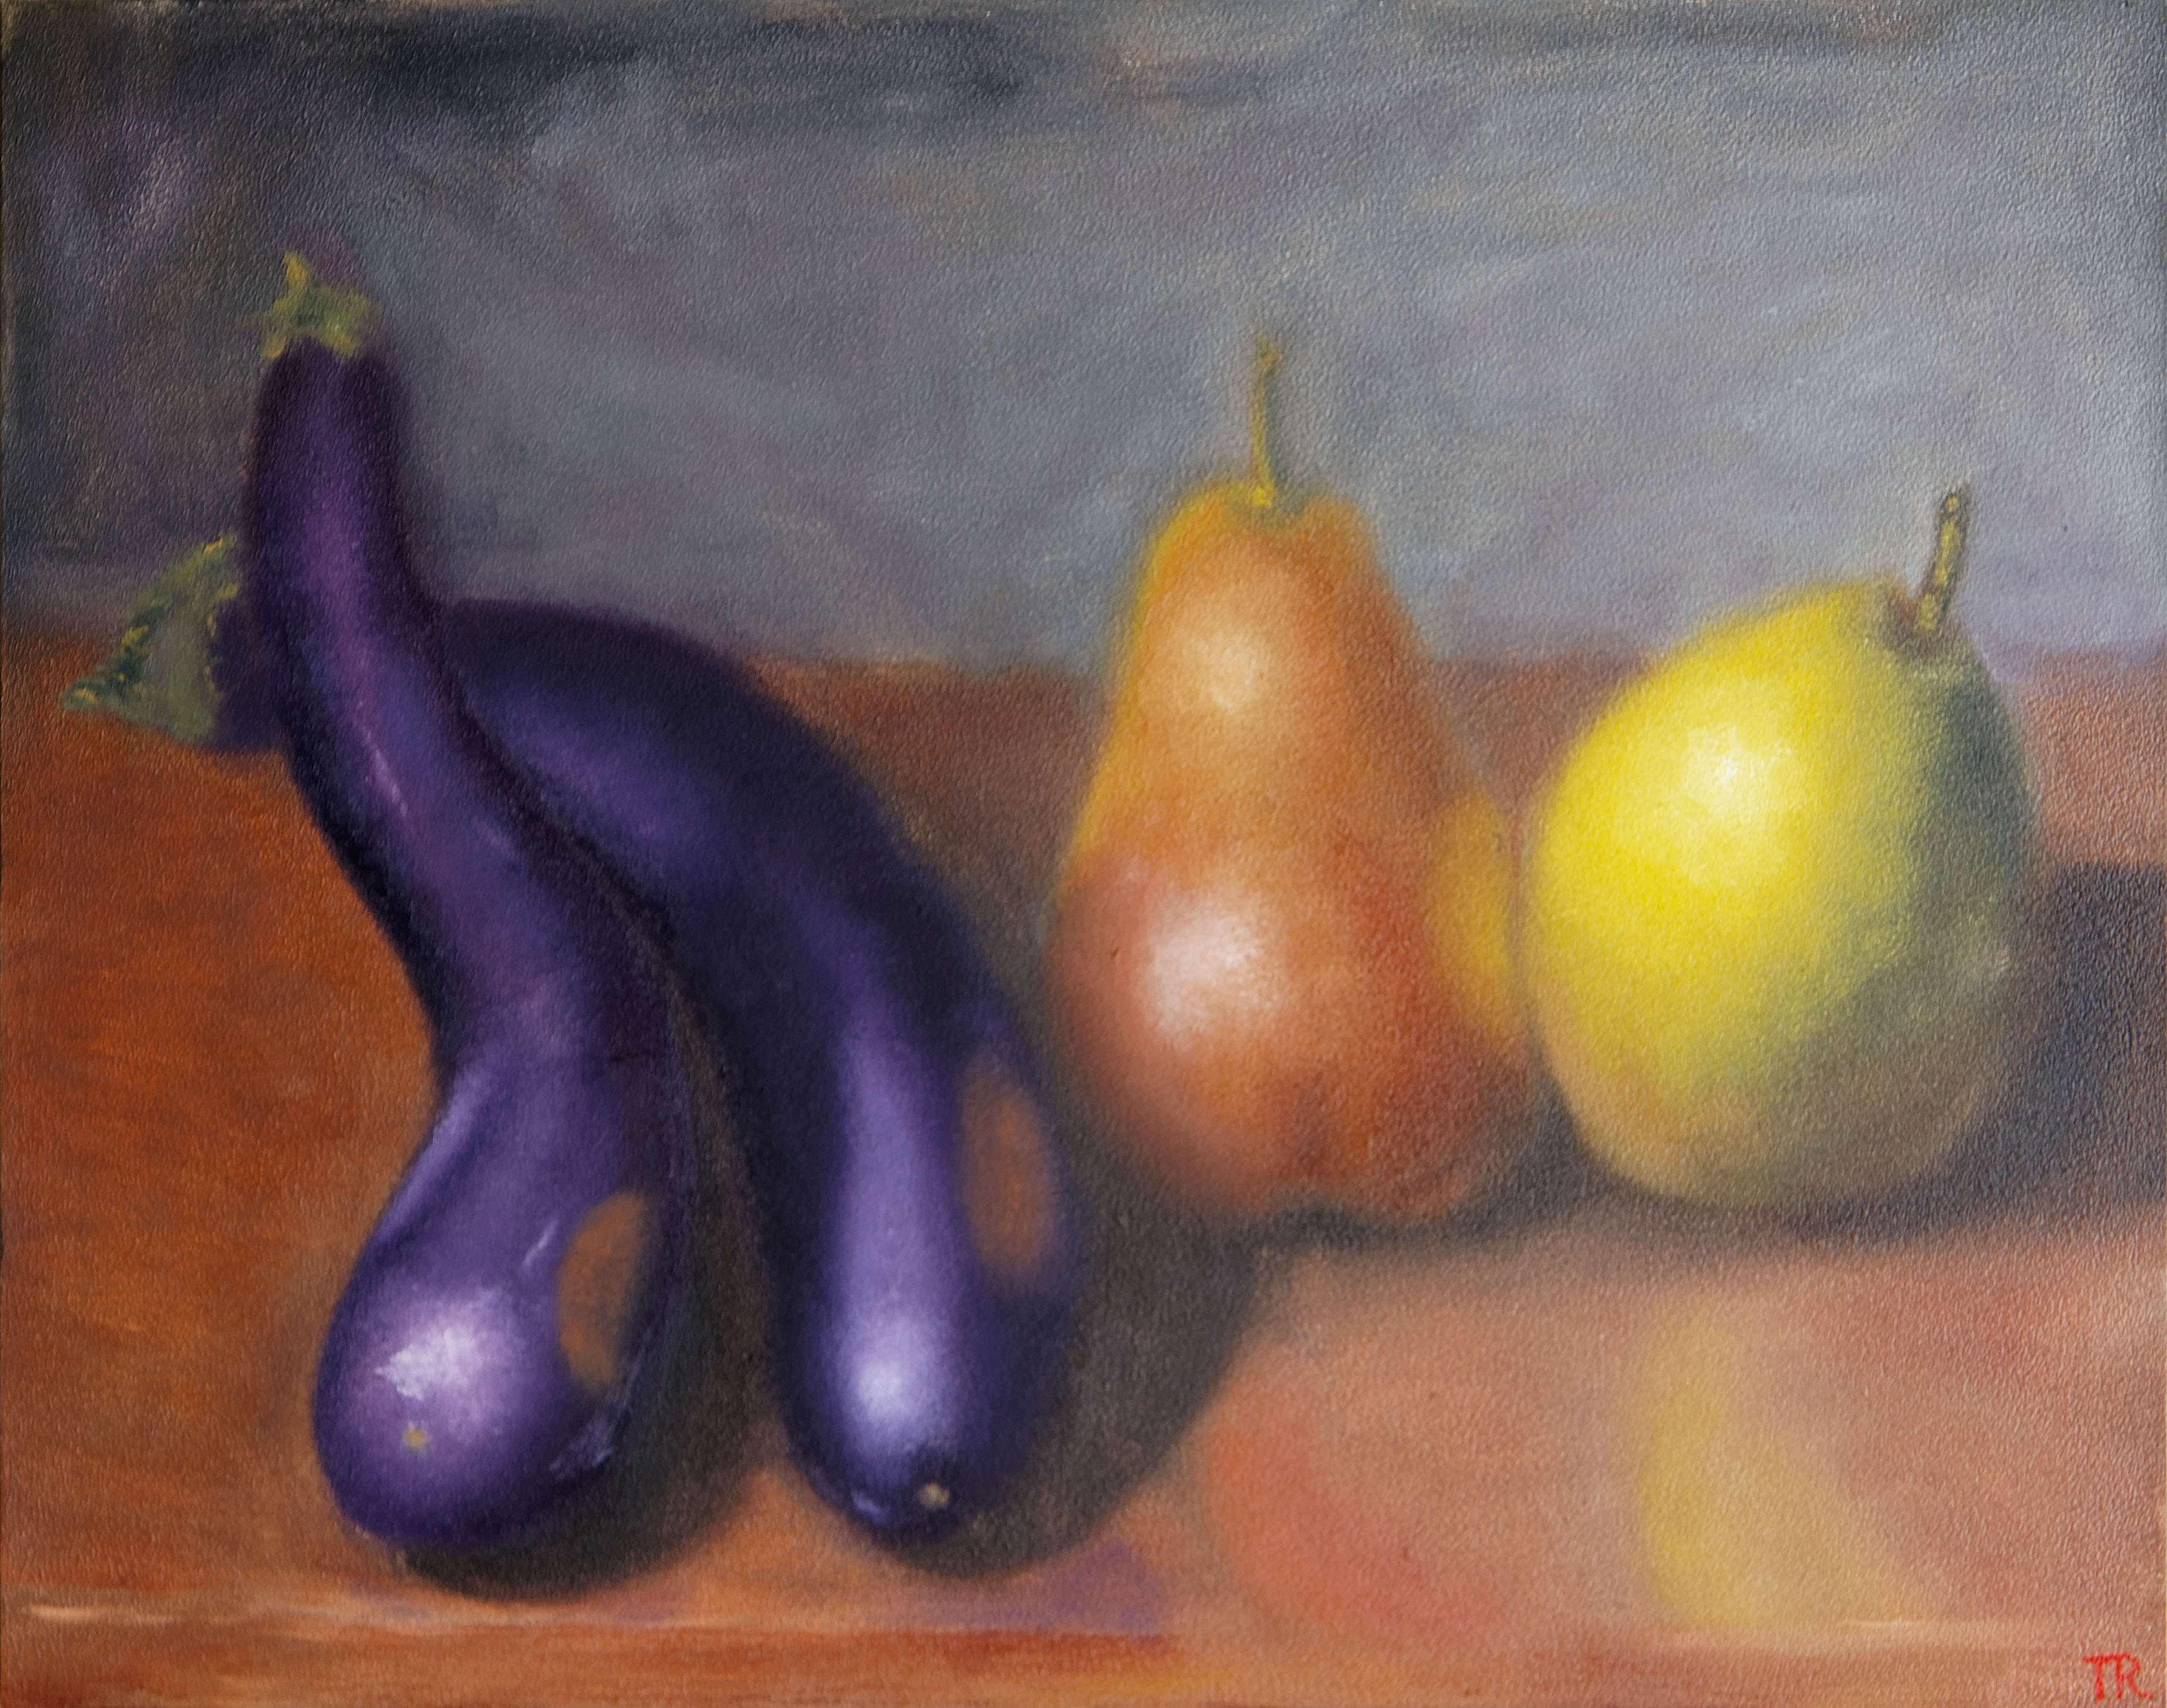 chinese.eggplant.n.pears.14x18.2019